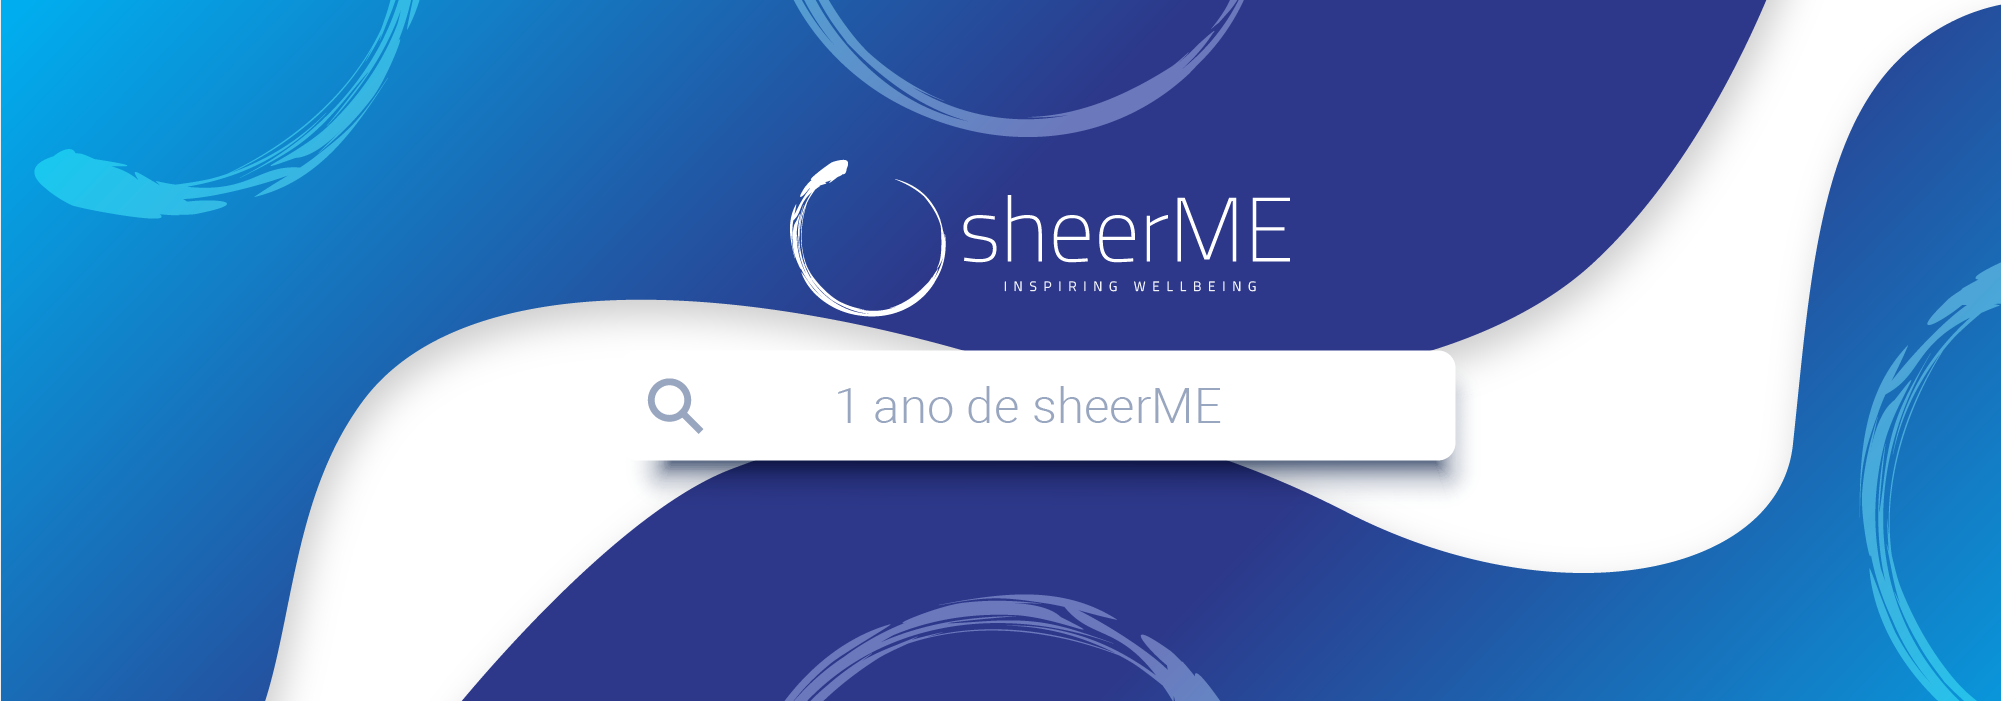 sheerME gerou mais de 2M de Euros em negócio para o setor de Bem-Estar e Beleza